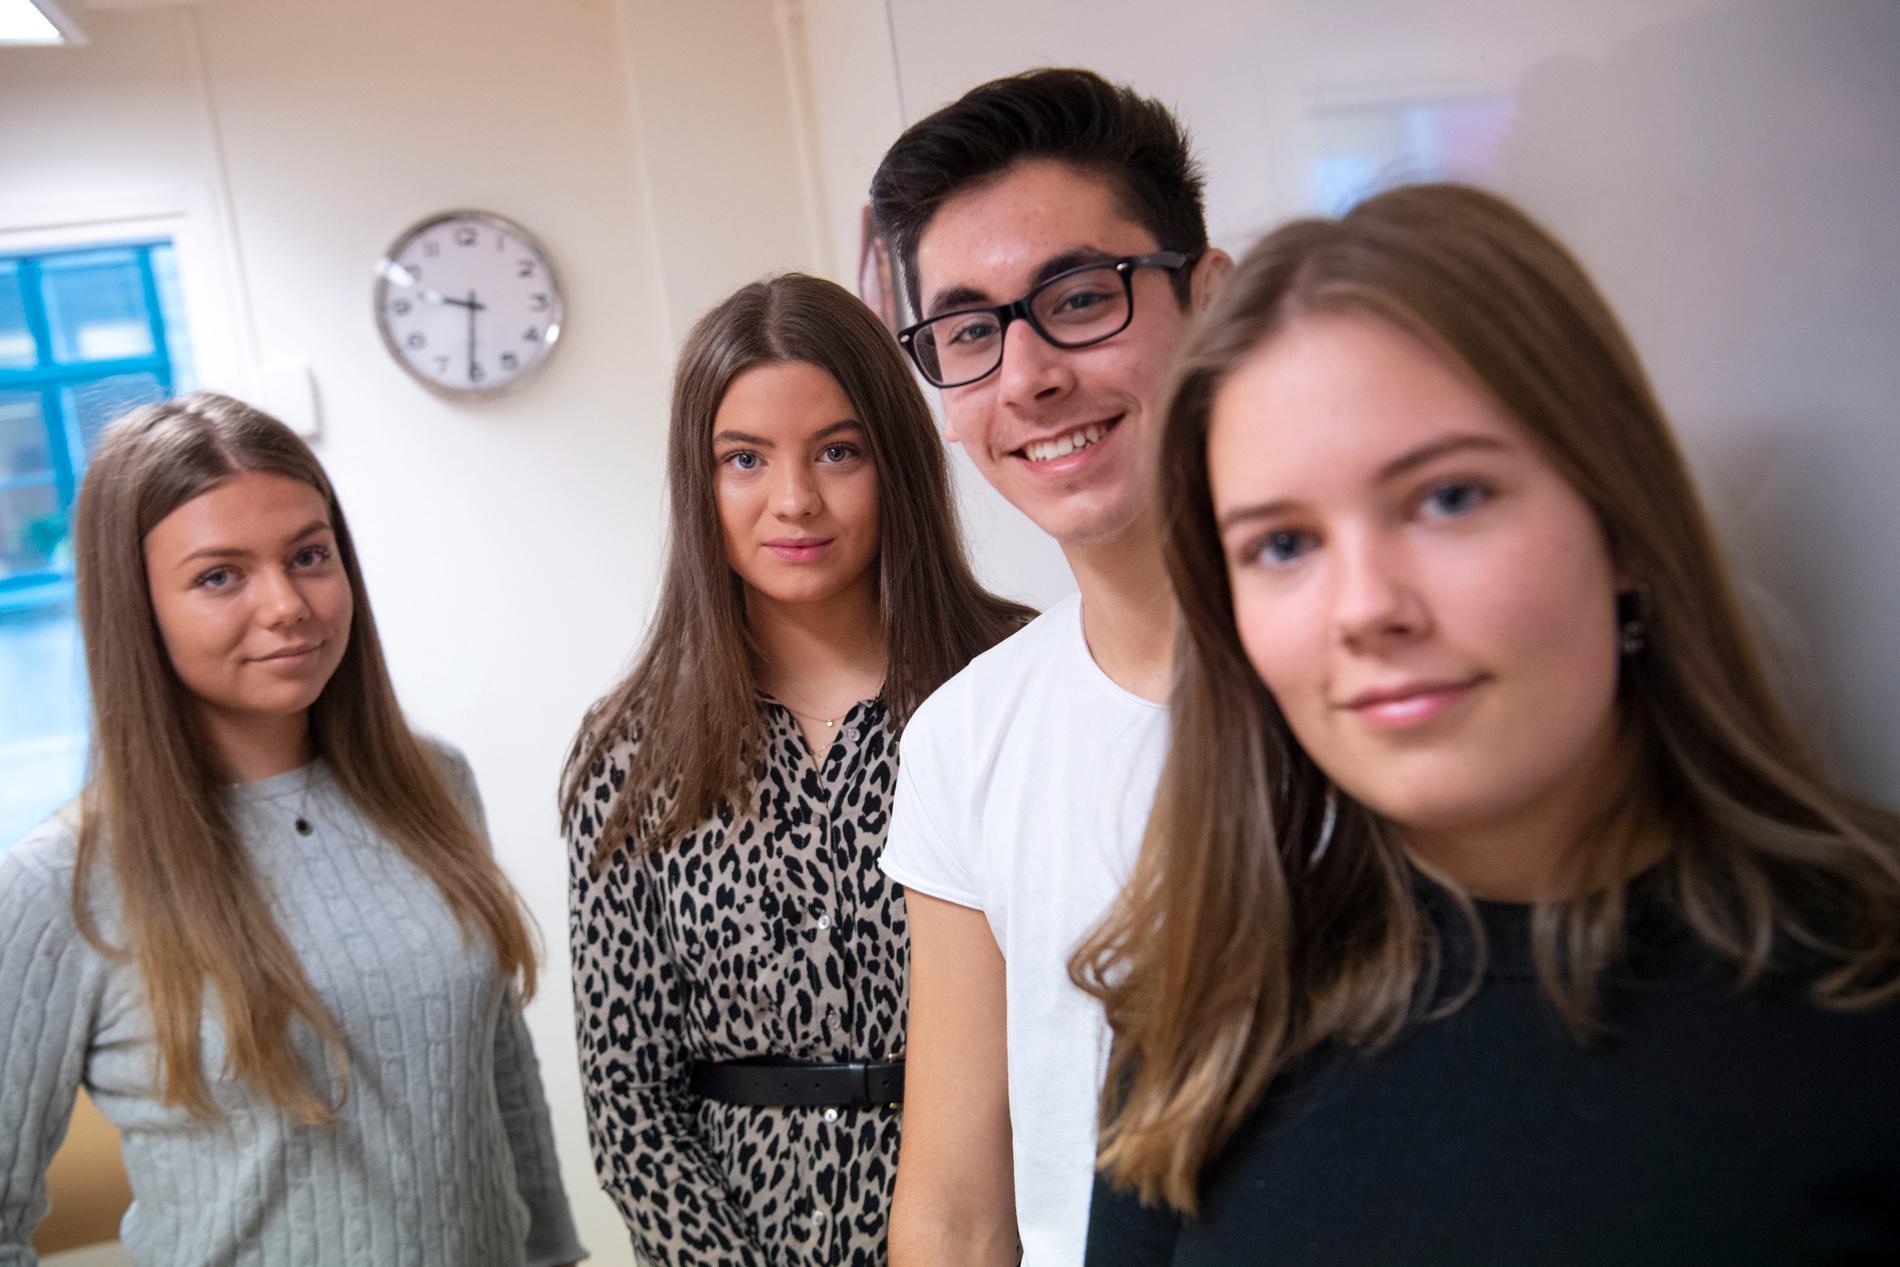 Den elev på Rönnowska skolan i Helsingborg som inte låter sig drogtestas riskerar att gå miste om sin praktikperiod. – För oss som tycker att det är bra är drogtesterna inget vi tänker så mycket på, säger Sofia Axelsson, andra person från vänster i bild.